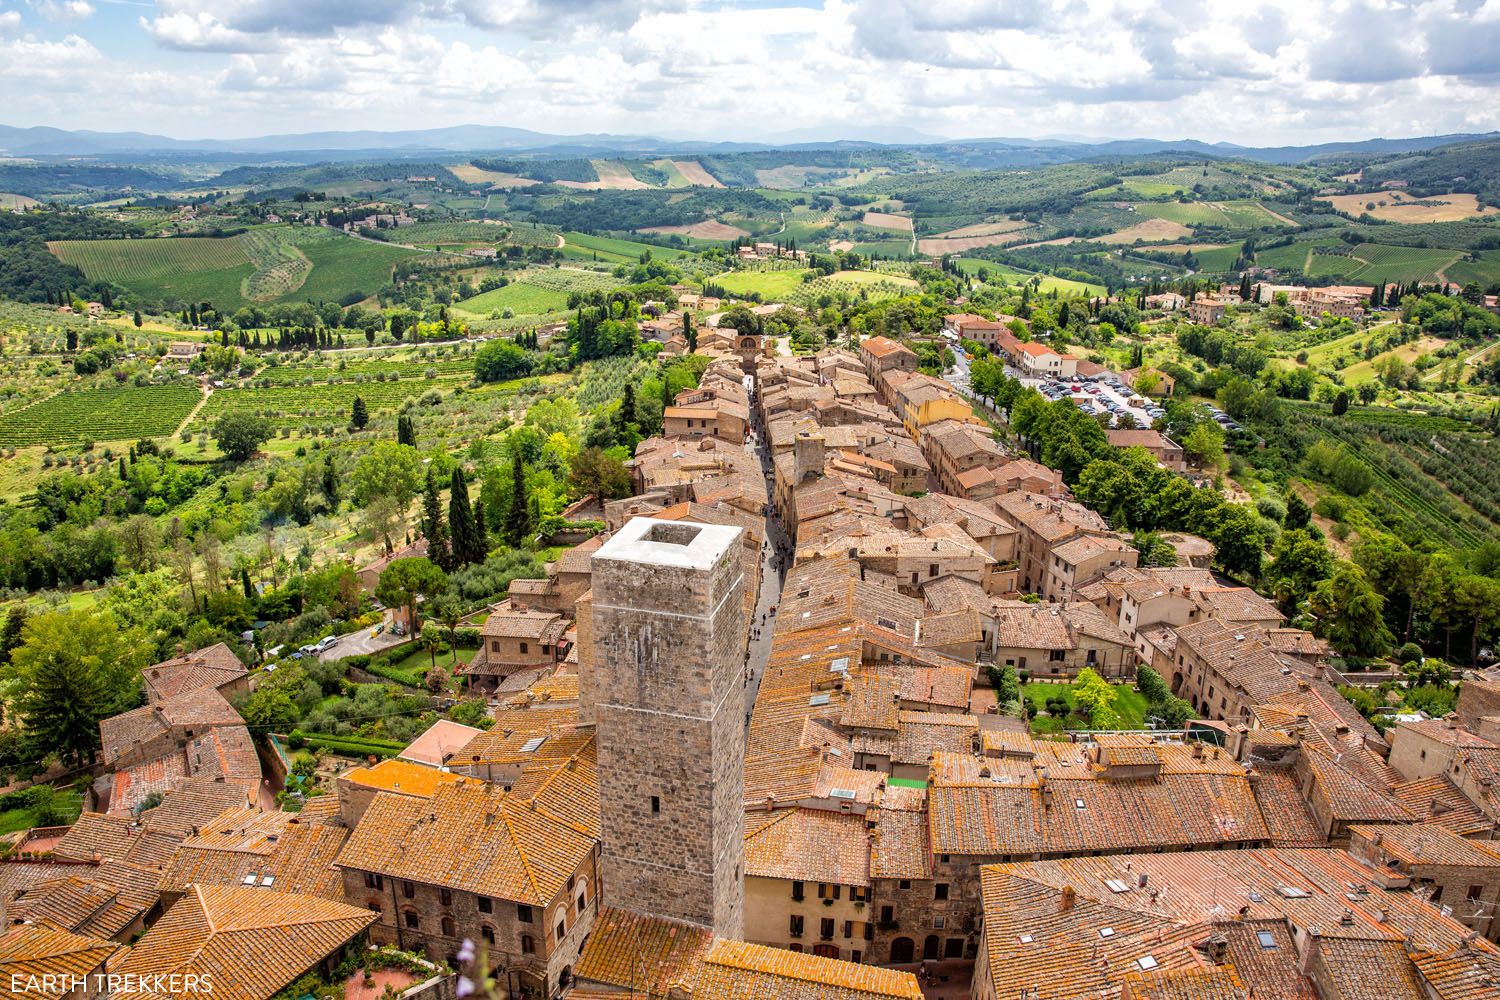 San Gimignano Tuscany Italy